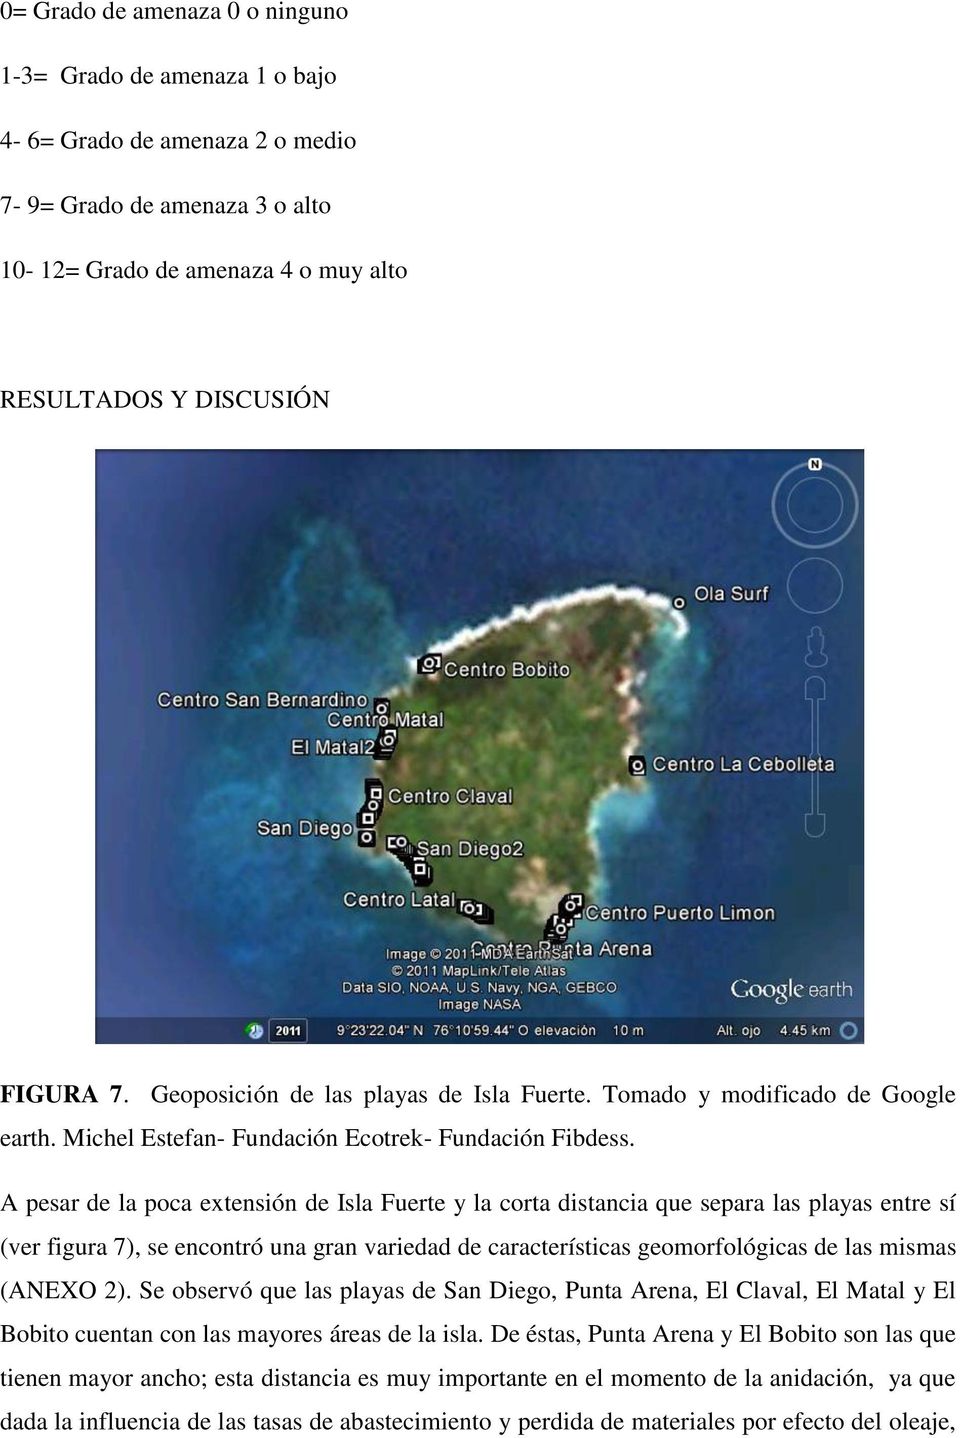 A pesar de la poca extensión de Isla Fuerte y la corta distancia que separa las playas entre sí (ver figura 7), se encontró una gran variedad de características geomorfológicas de las mismas (ANEXO